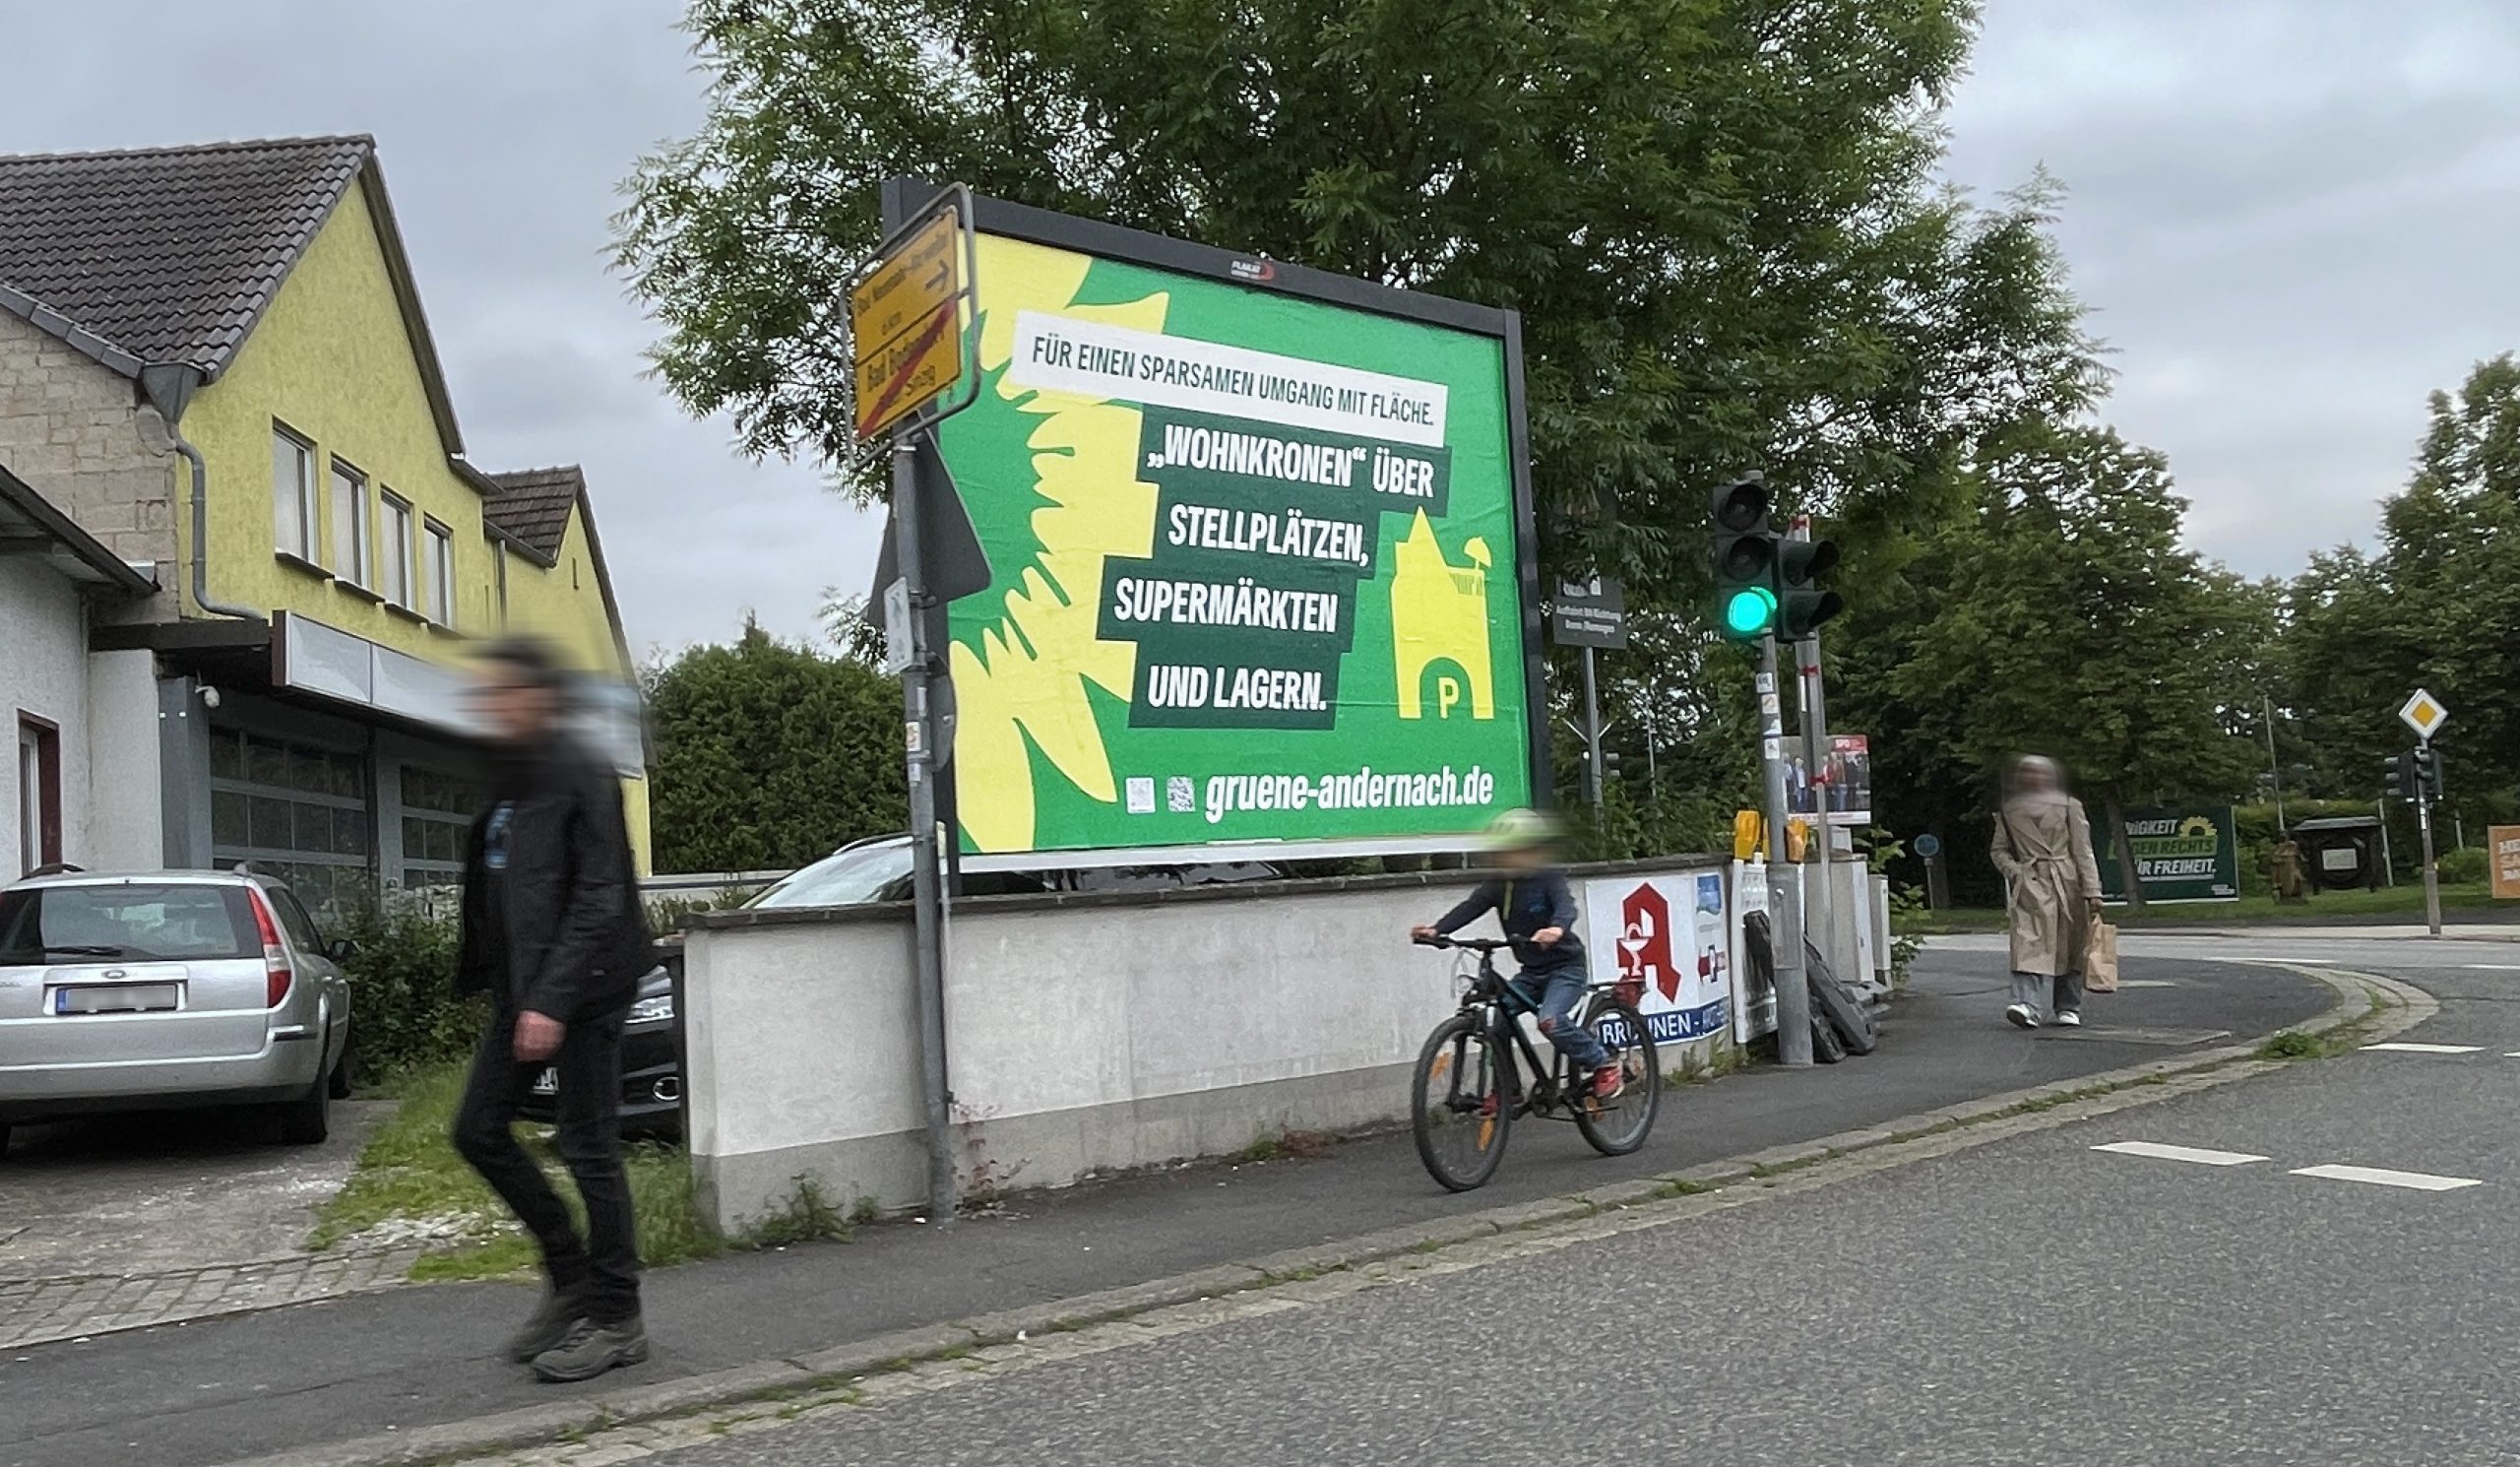 Ein Wahlplakat der Andernacher Grünen landete irrtümlich in Bad Bodendorf (Foto: Ralf Urban)